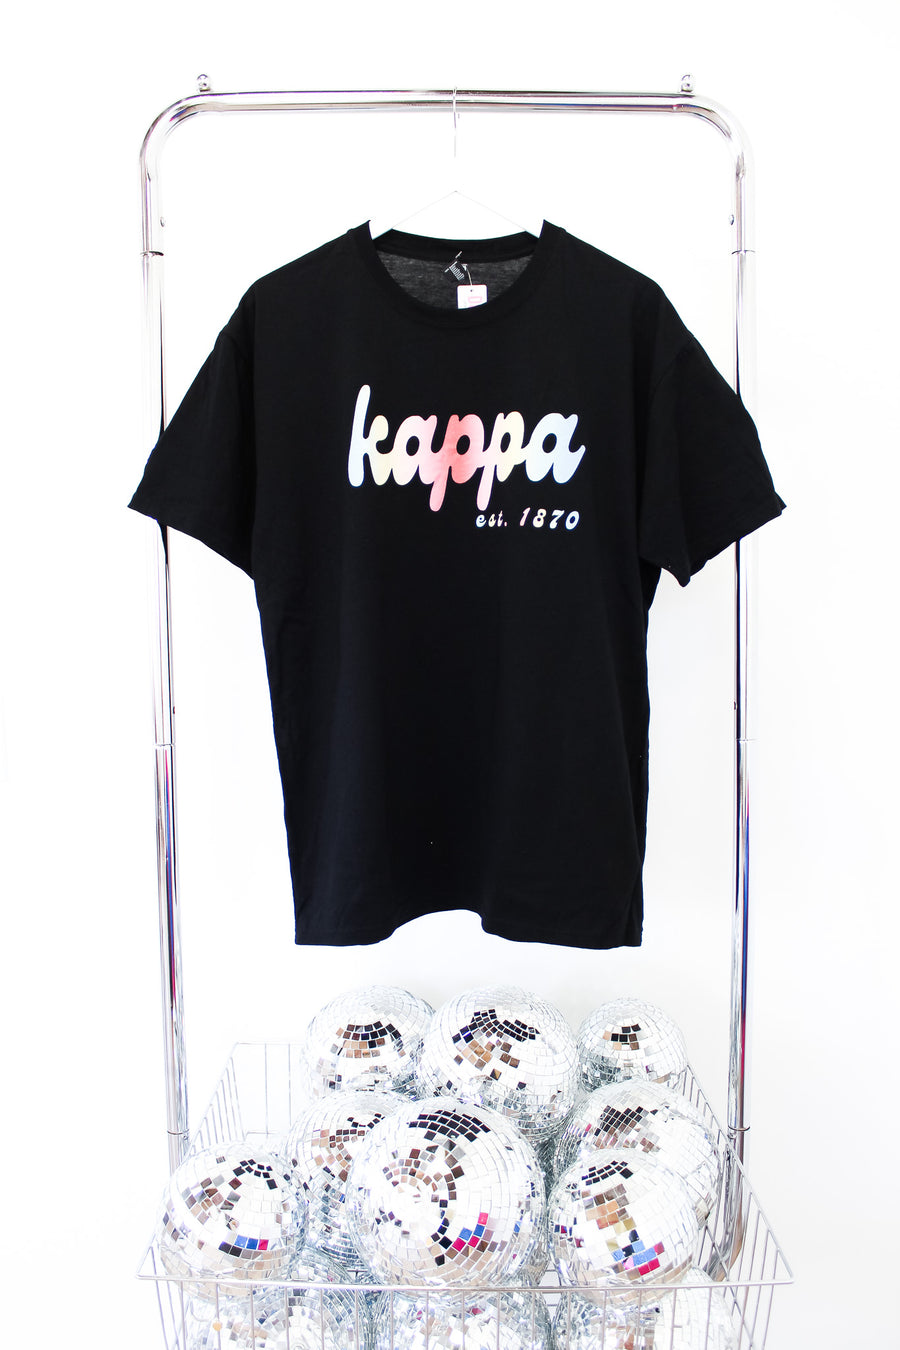 Kappa Kappa Gamma Tee - LG BLACK